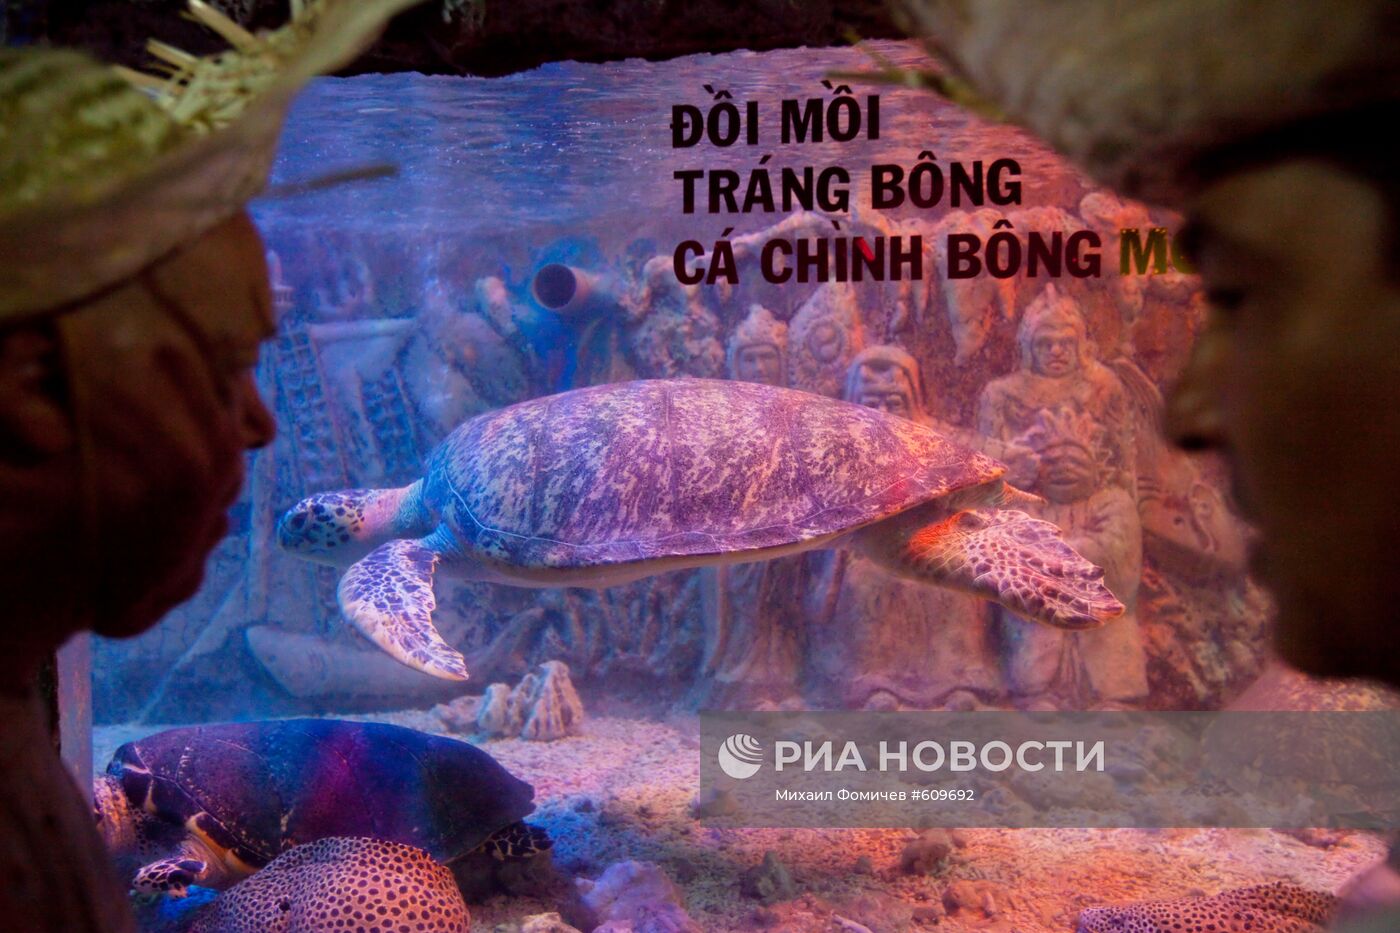 Посетители у аквариума с реликтовой черепахой